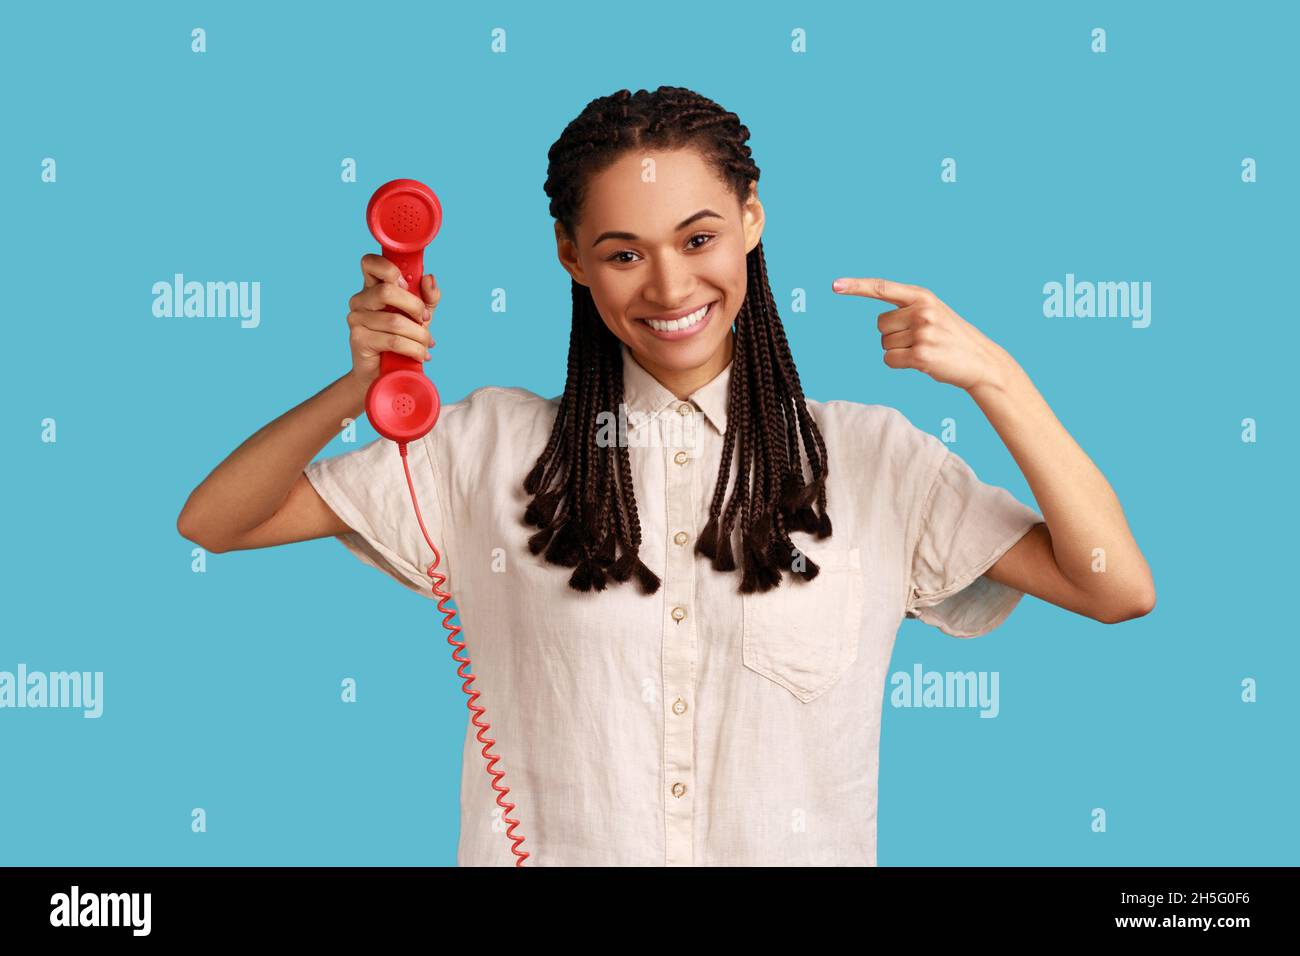 Portrait d'une femme souriante satisfaite avec des dreadlocks noirs tenant le téléphone rouge rétro, centre d'appels. Portant une chemise blanche.Studio d'intérieur isolé sur fond bleu. Banque D'Images